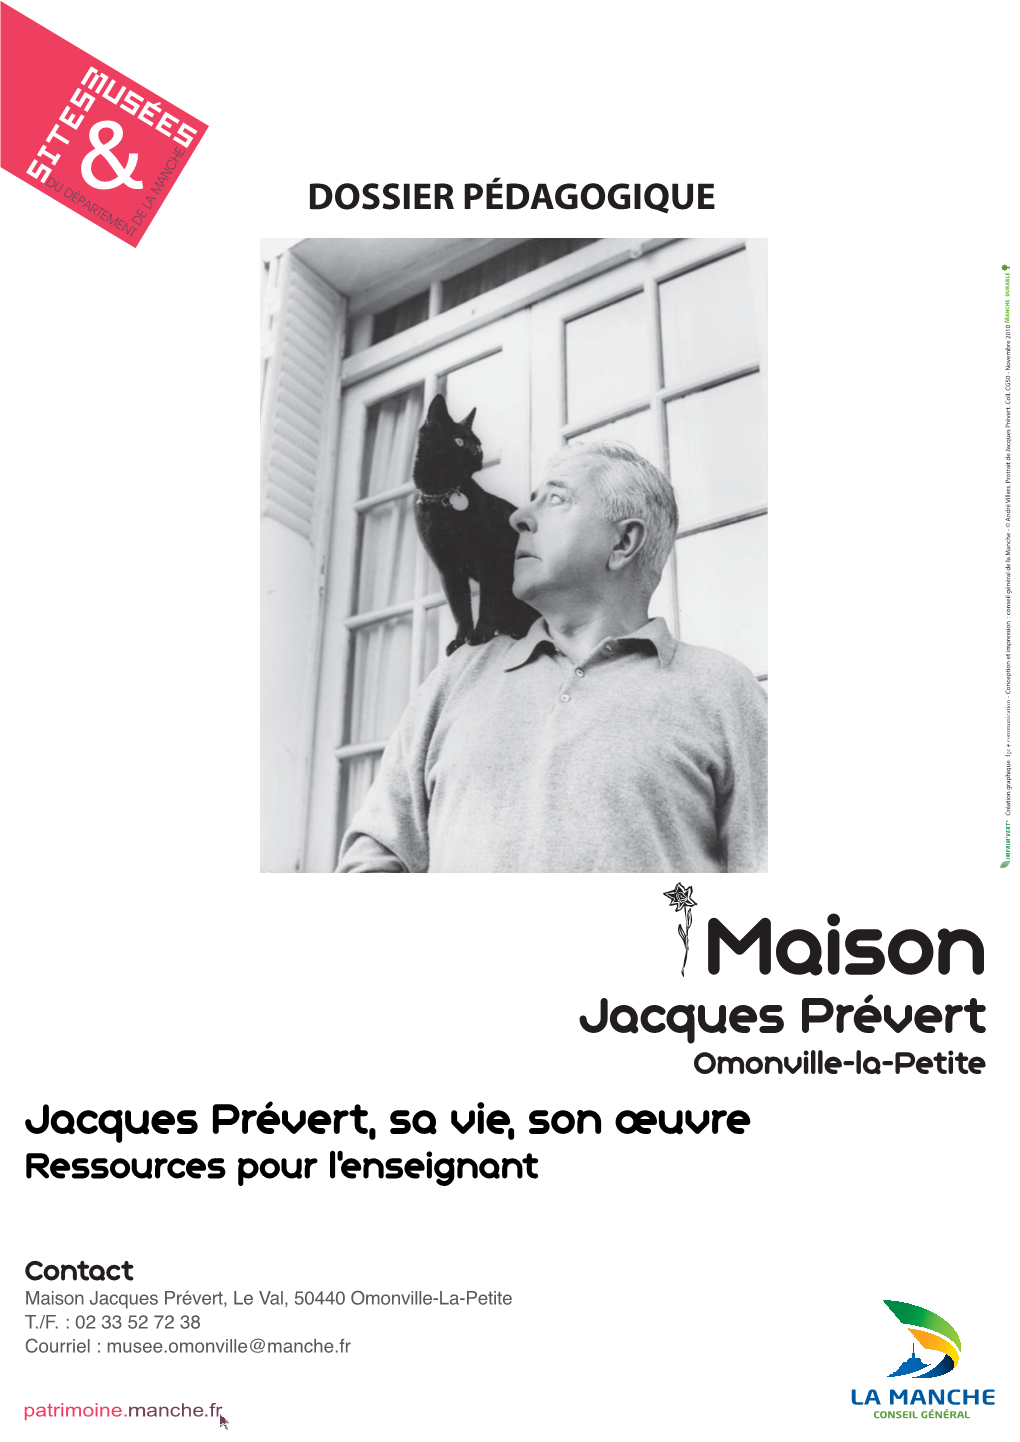 Jacques Prévert, Savie, Sonœuvre DOSSIER PÉDAGOGIQUE Jacques Prévert Omonville-La-Petite Maison